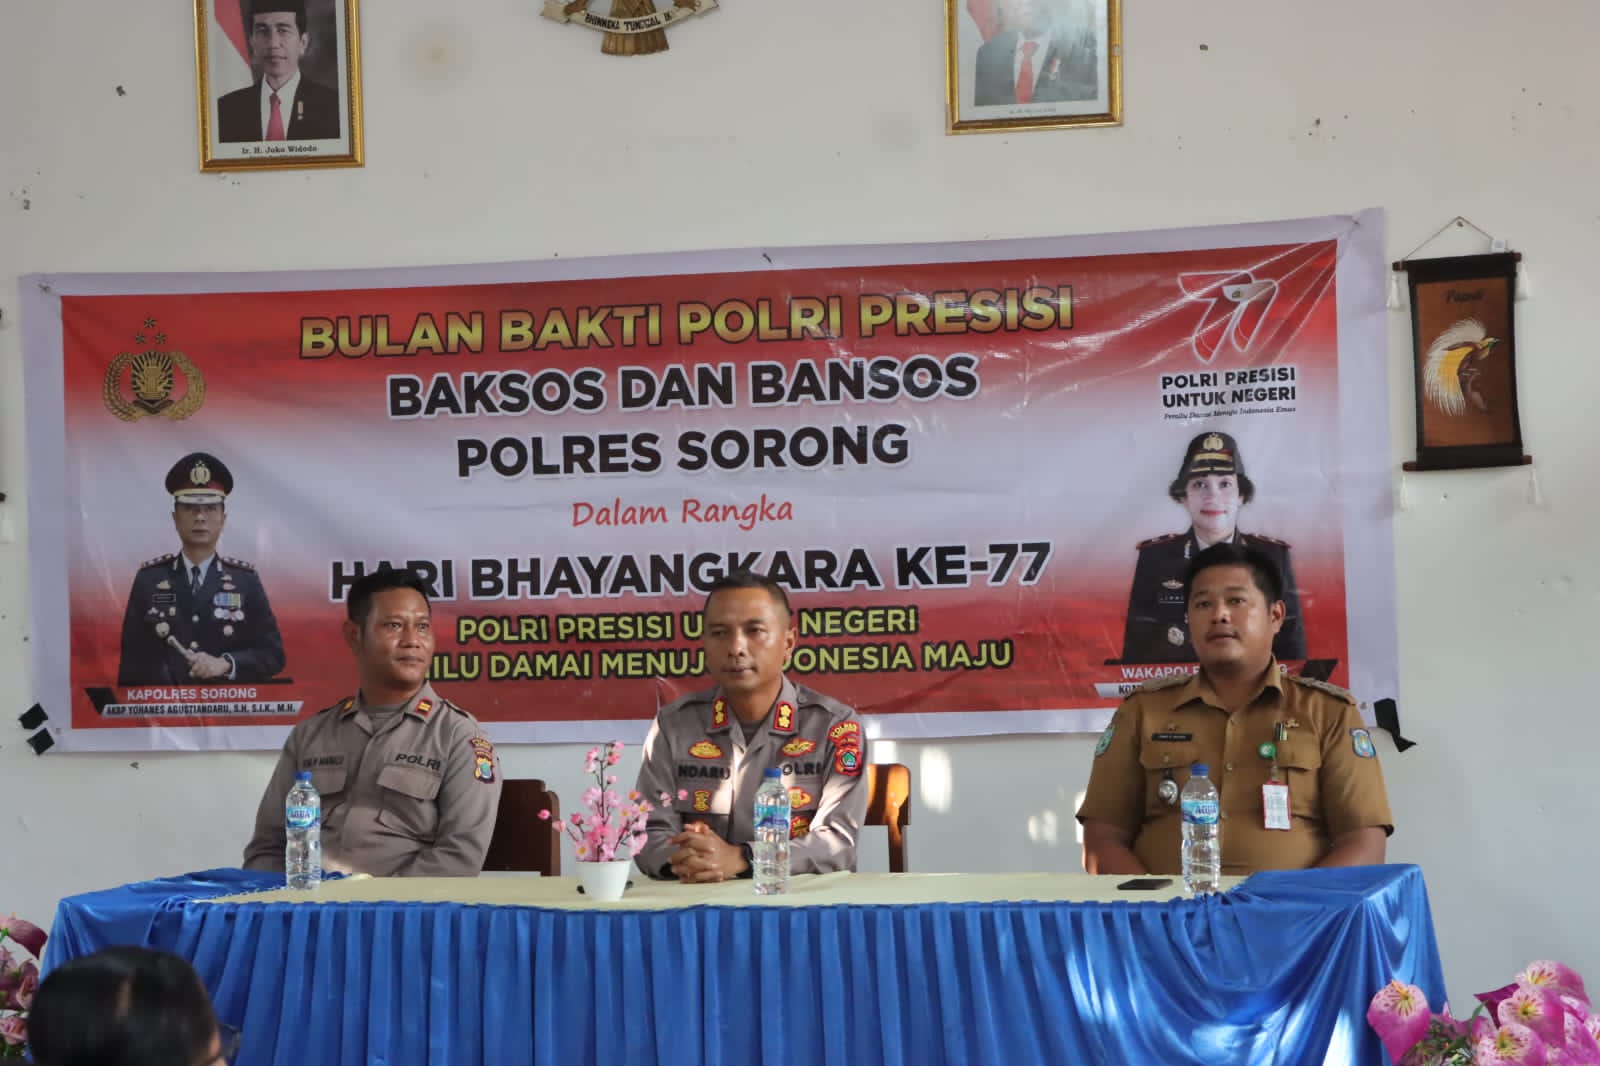 You are currently viewing Menyambut hari Bhayangkara ke – 77 Polres Sorong Bagikan Baksos dan Bansos